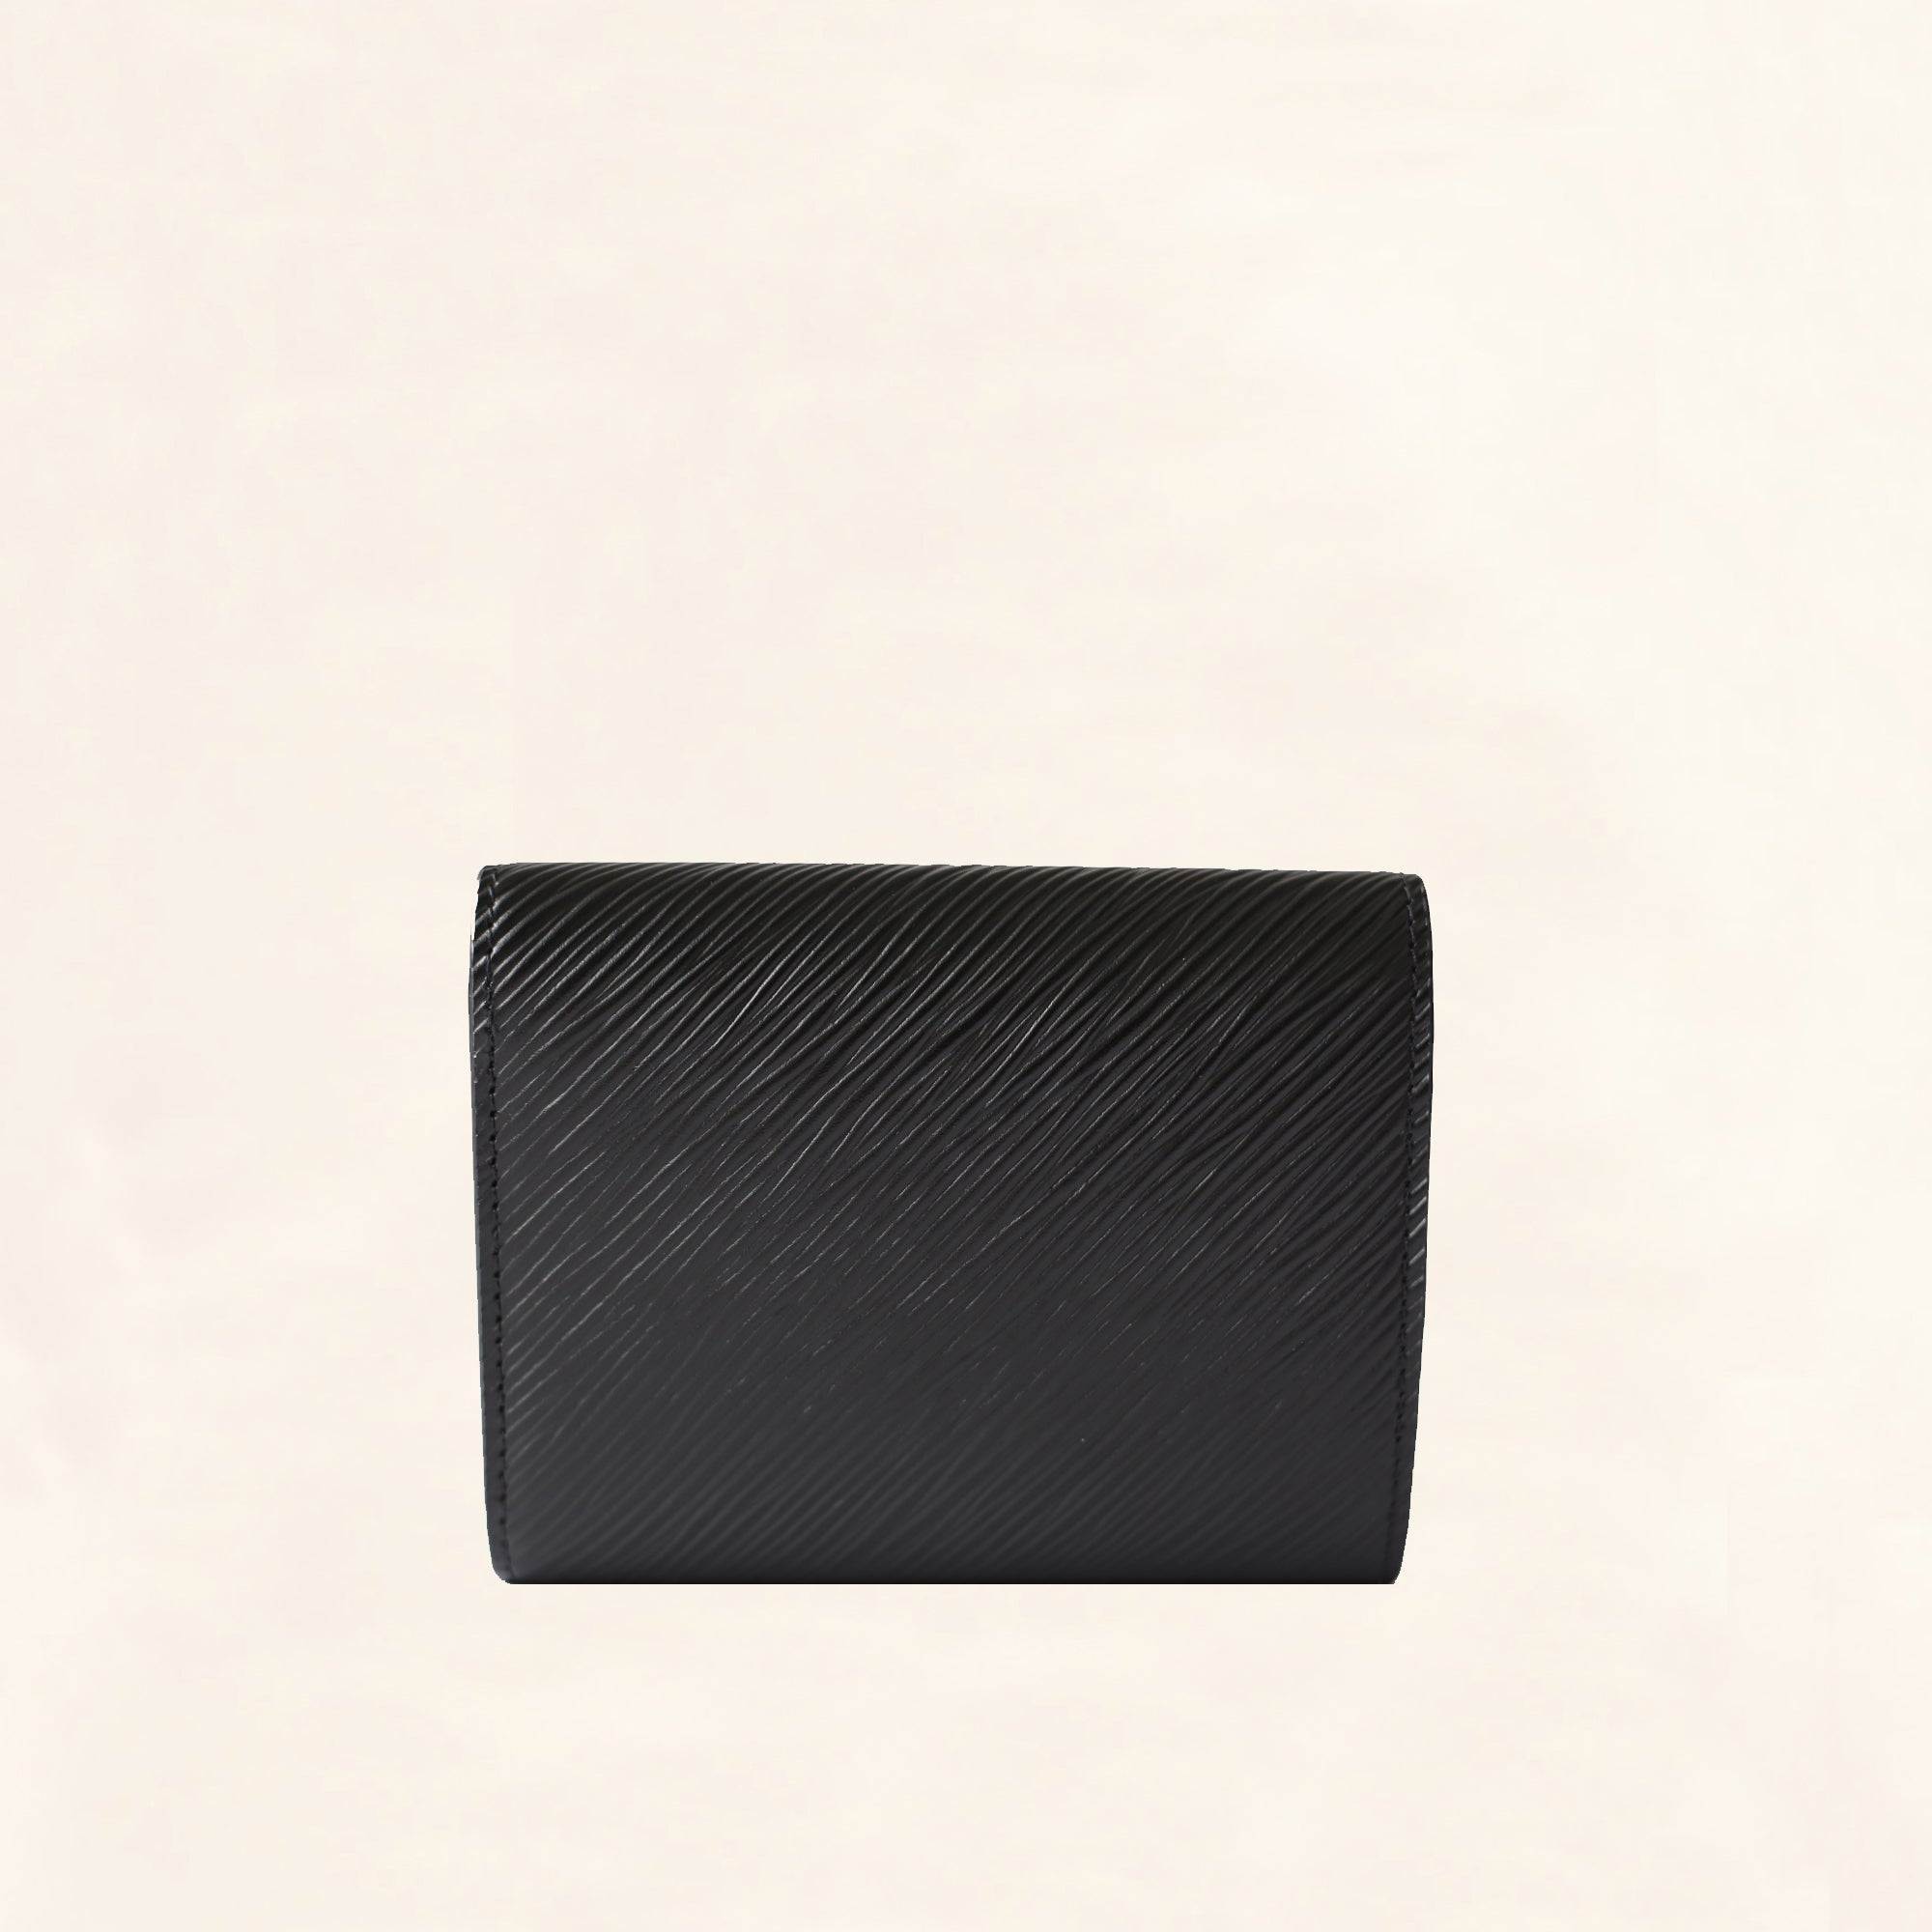 Authentic Louis Vuitton Epi Twist Compact Wallet